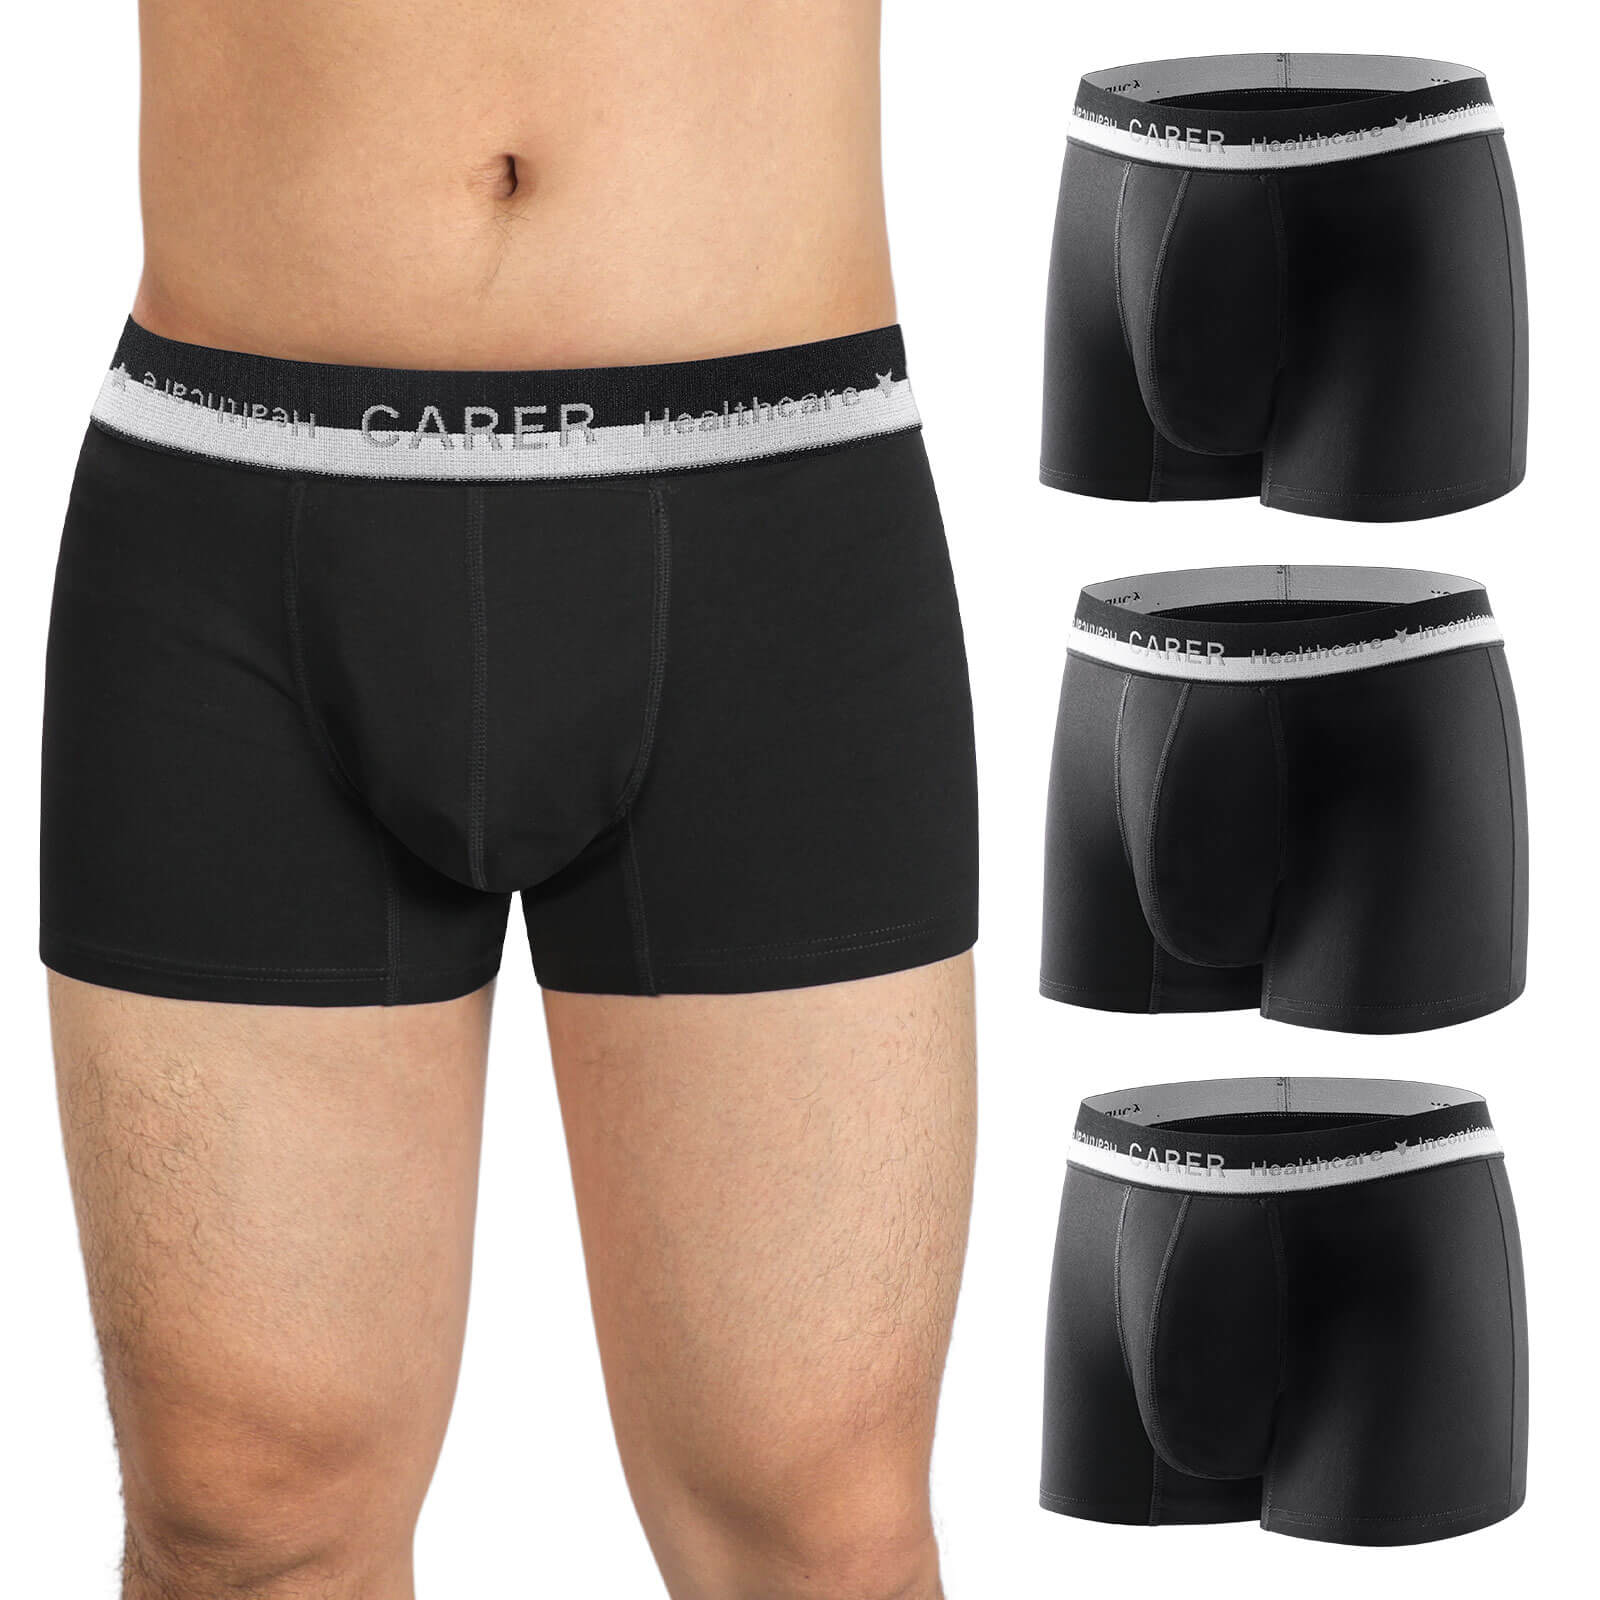 Bladder Leak Underwear for Men Incontinence - M71